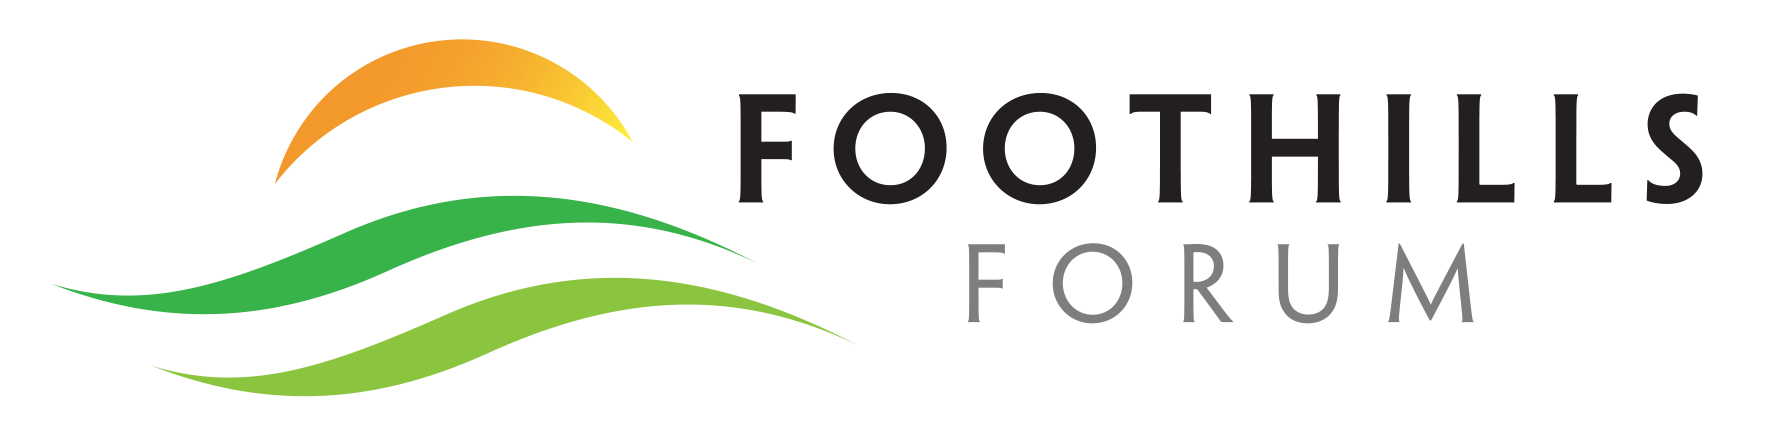 Foothills logo - horizontal